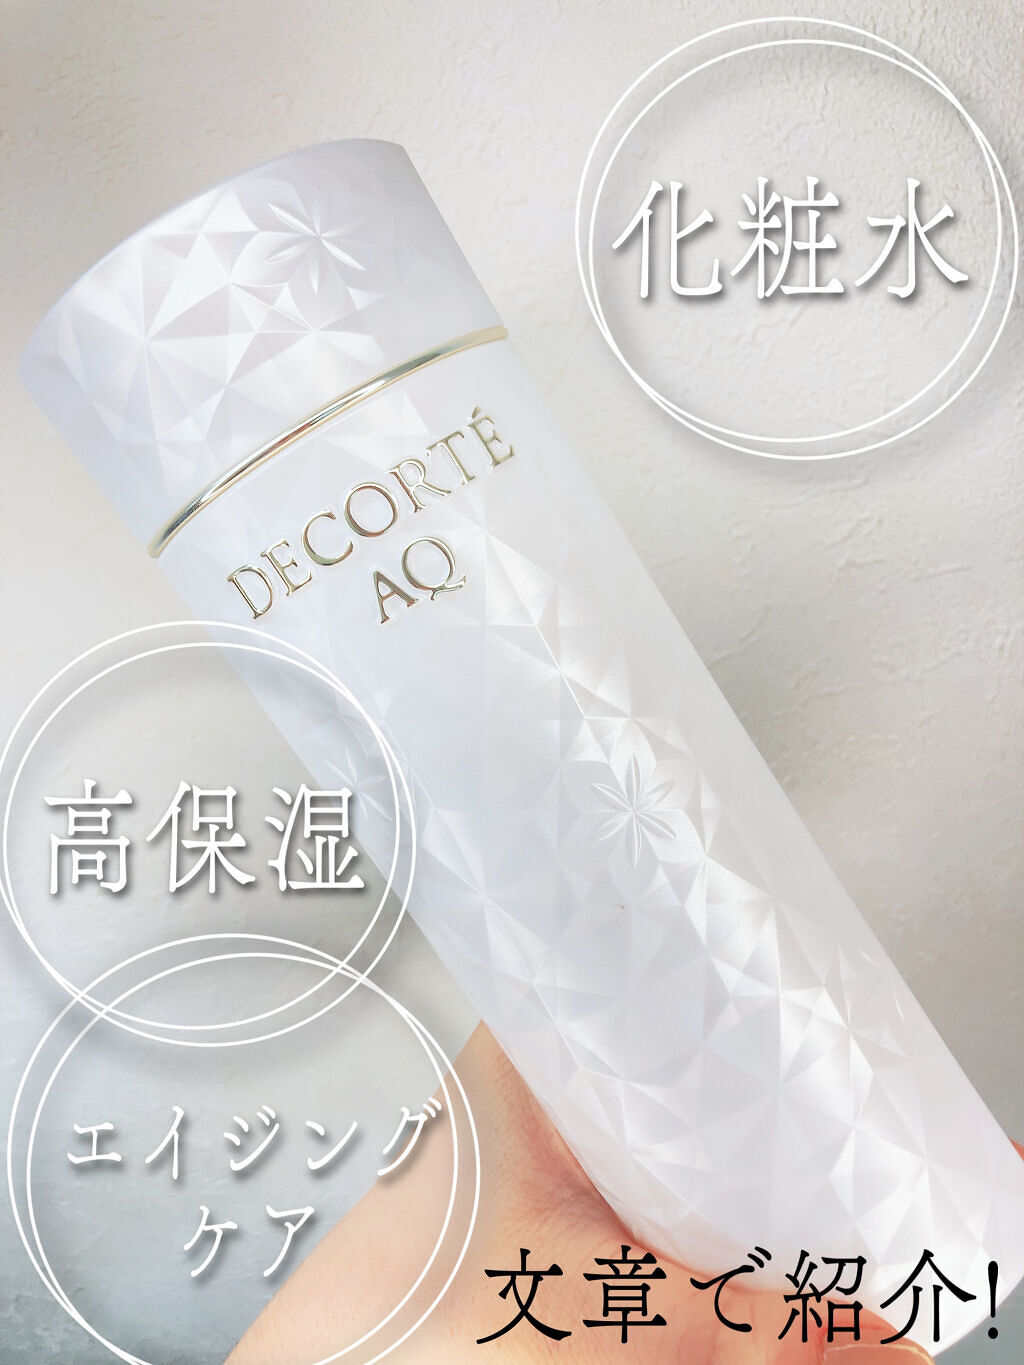 日本価格  エマルジョンER AQ コスメデコルテ 乳液/ミルク